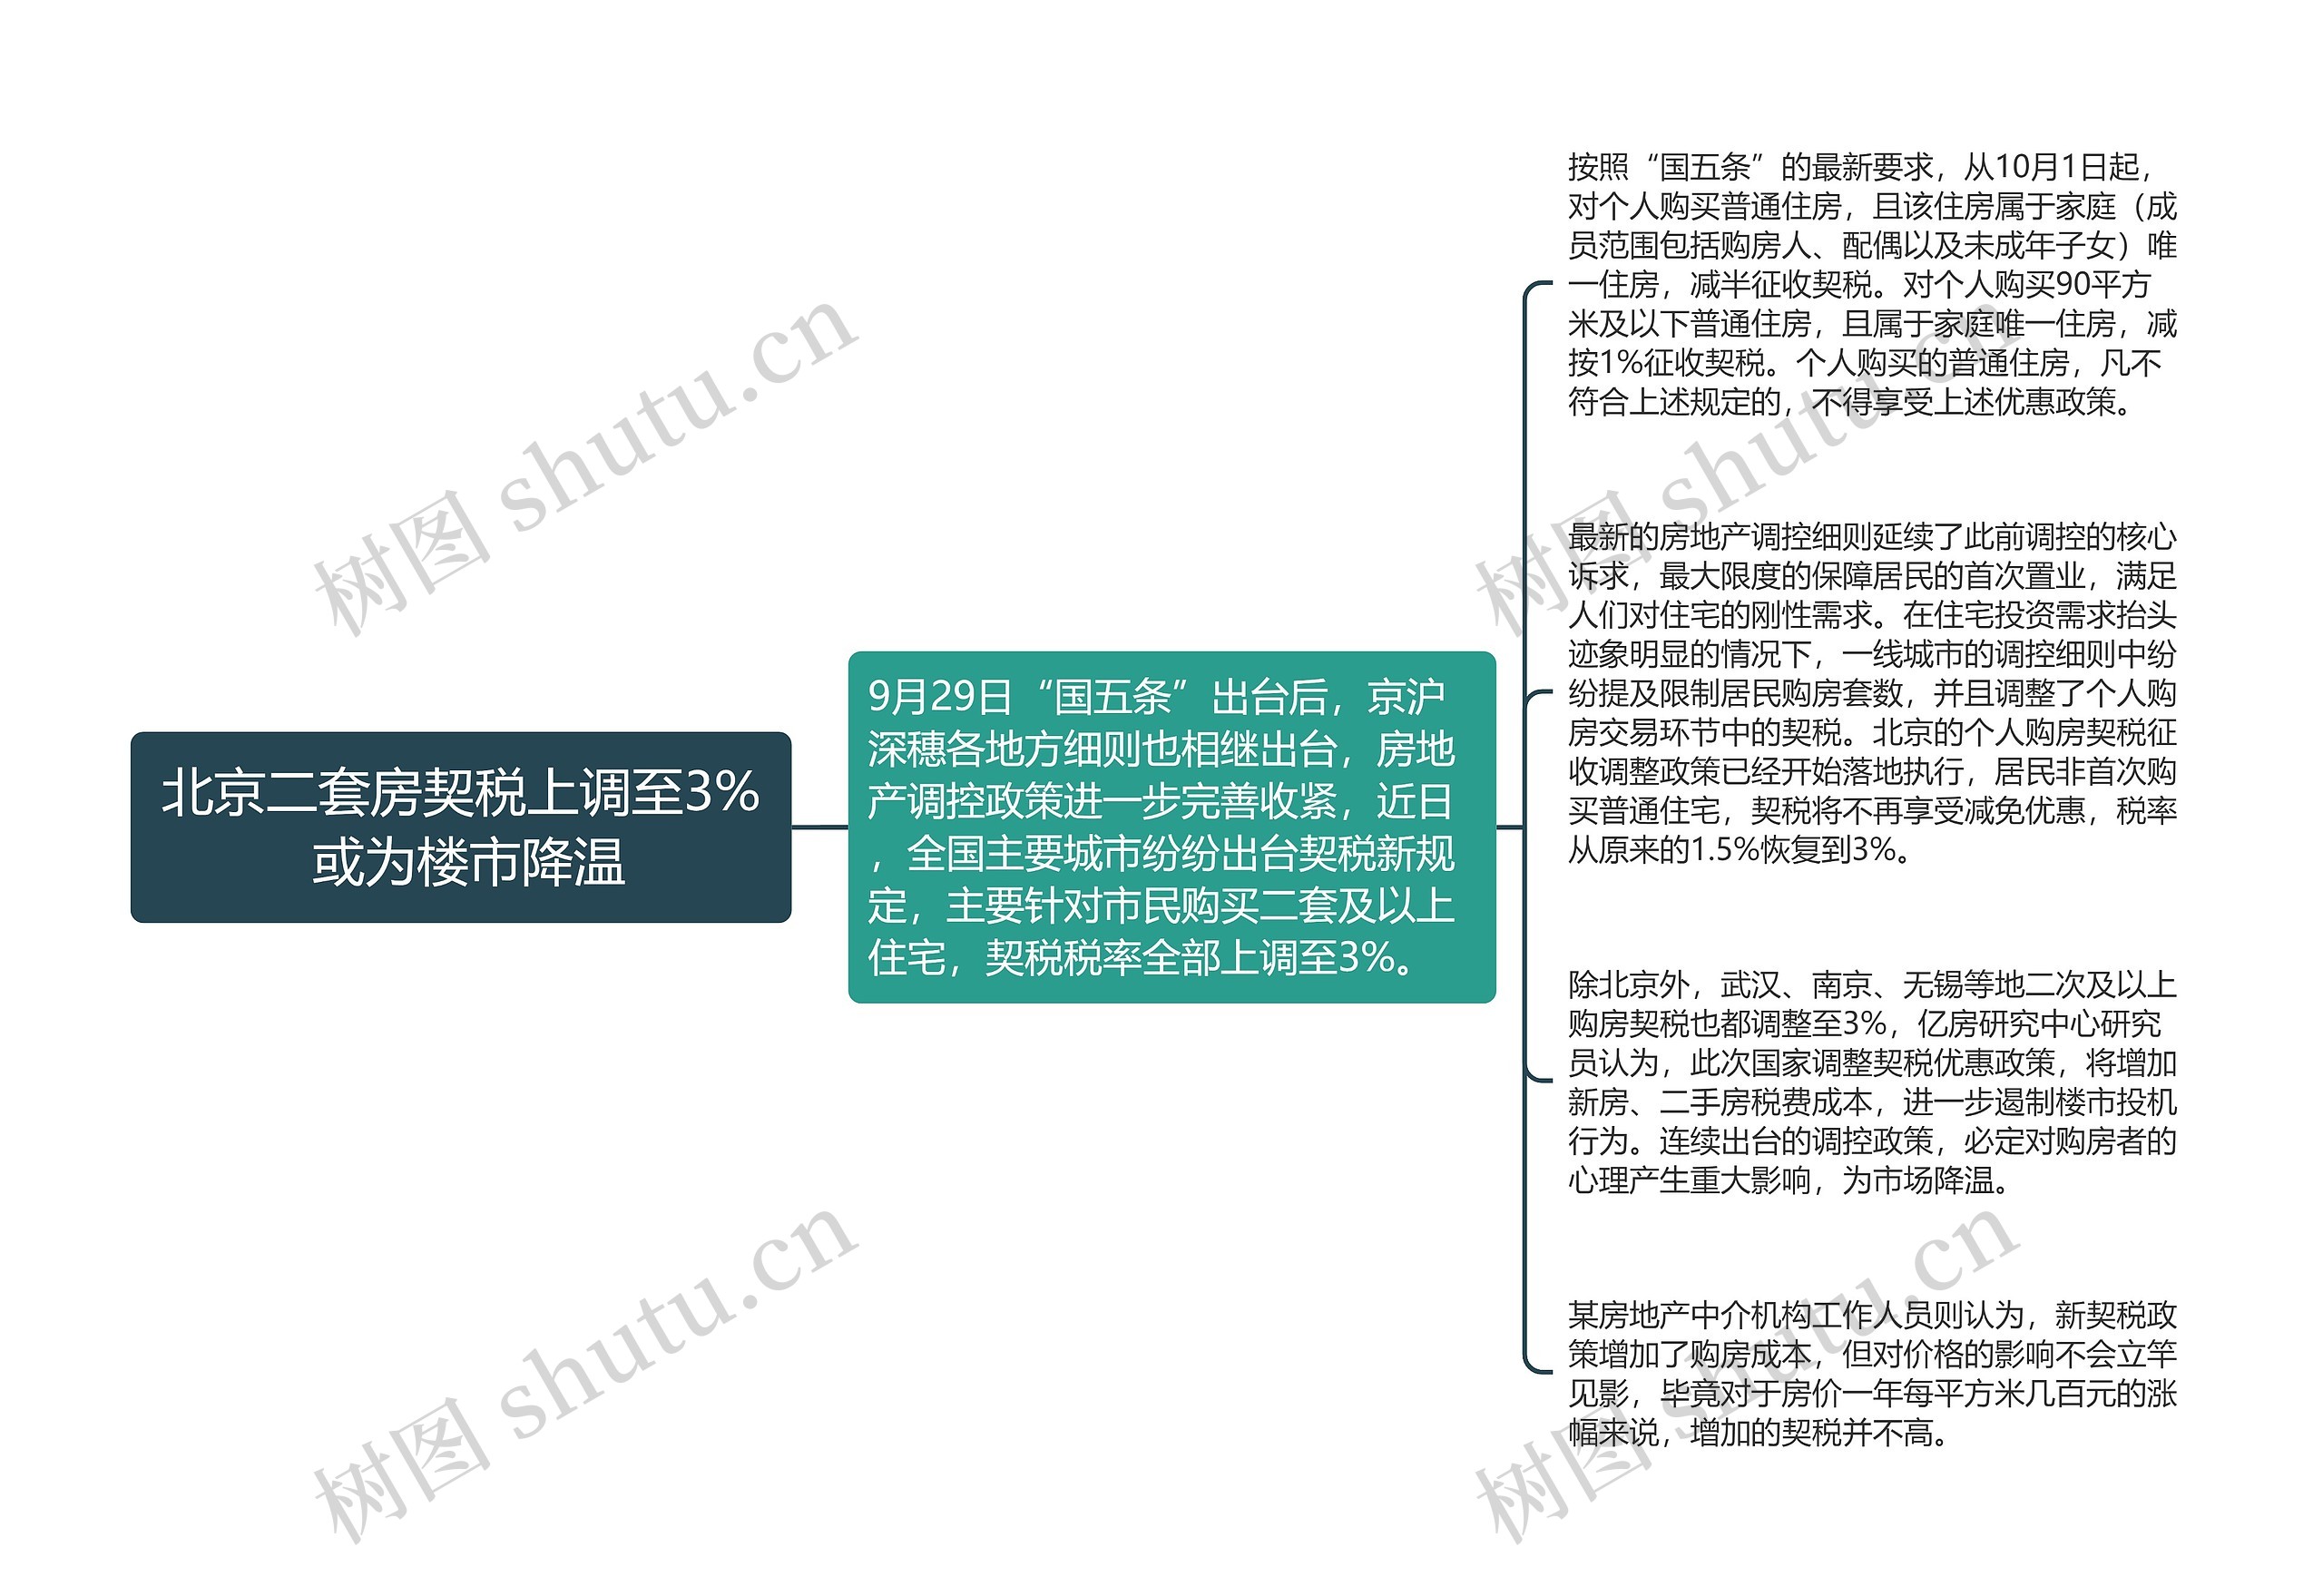 北京二套房契税上调至3% 或为楼市降温